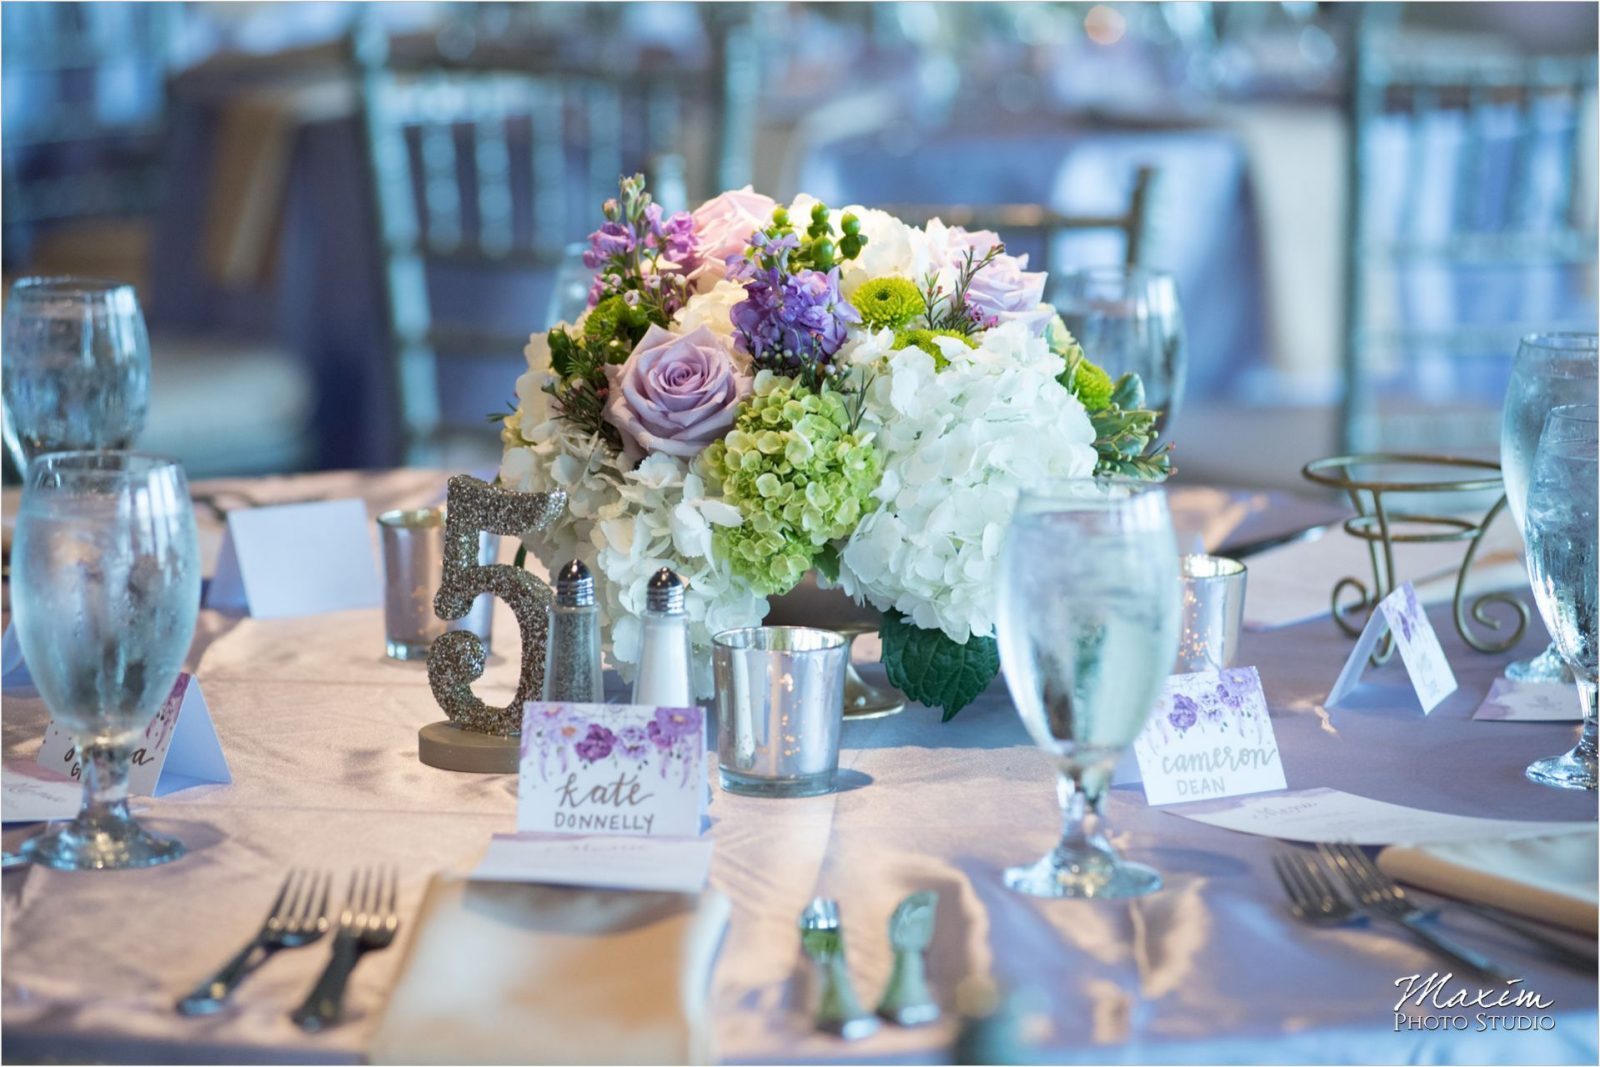 McHale's Catering Drees Pavilion Wedding Reception details